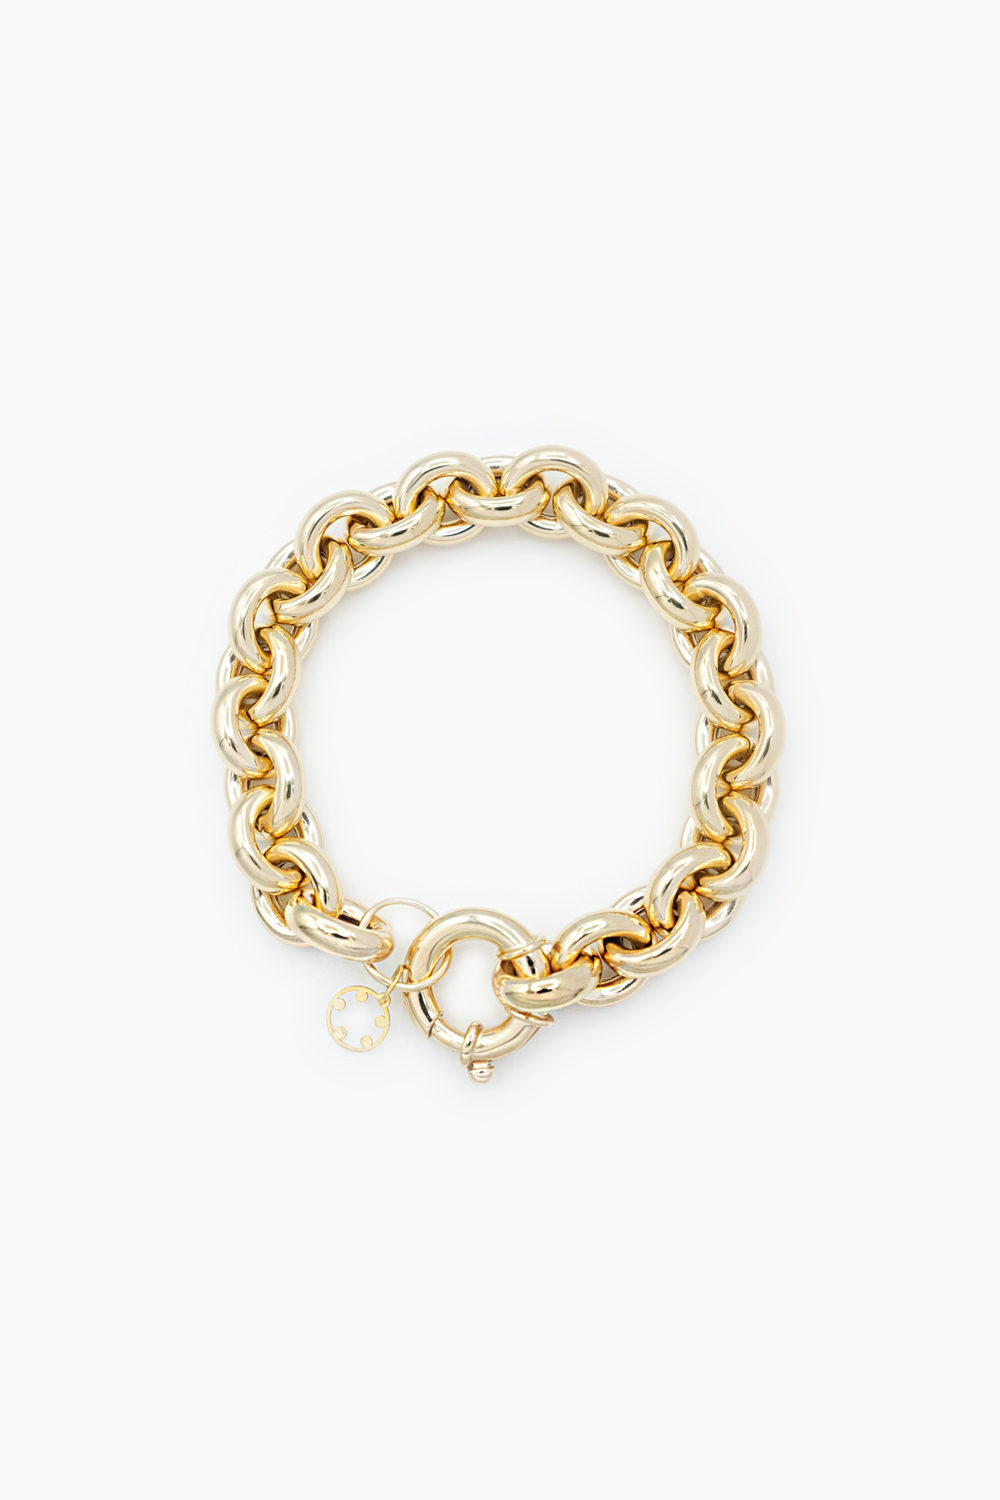 Jewellery Concept: Pulseira Ouro